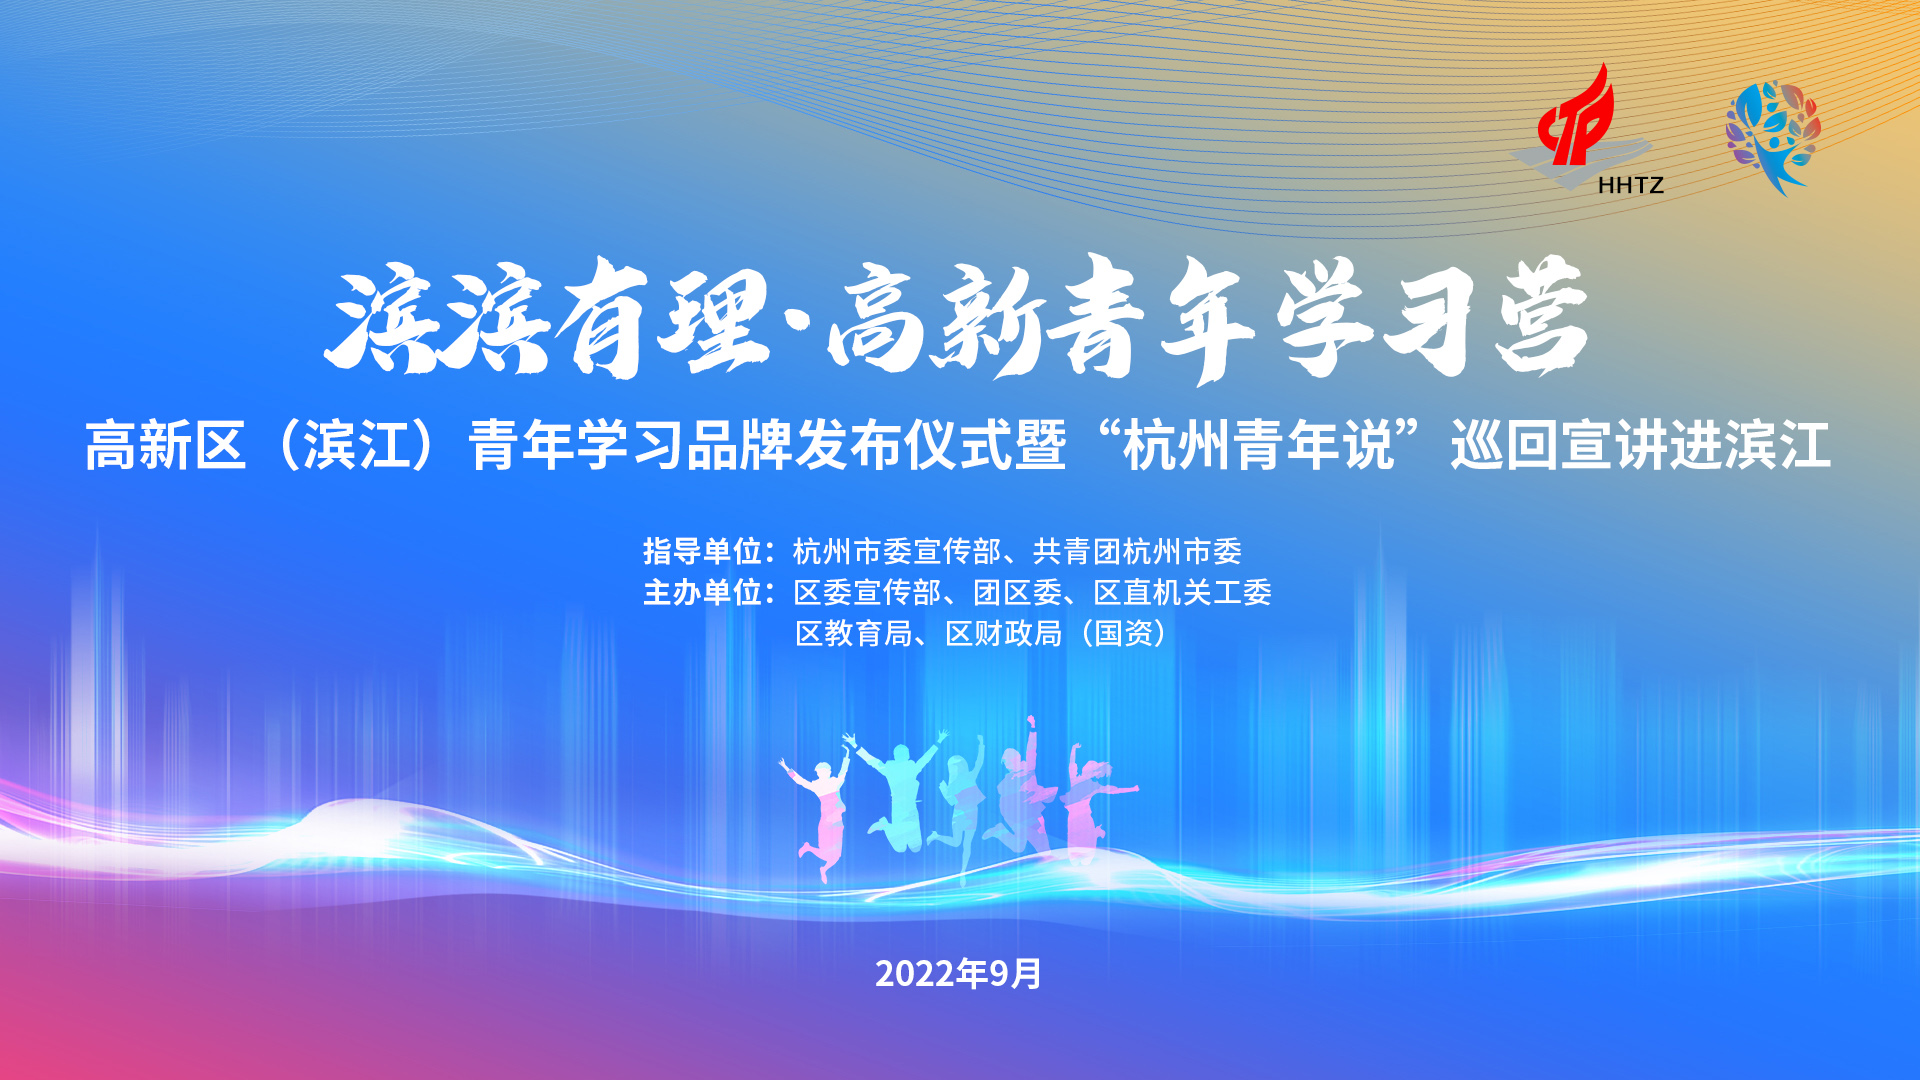 高新区（滨江）青年学习品牌发布仪式暨“杭州青年说”巡回宣讲进滨江活动